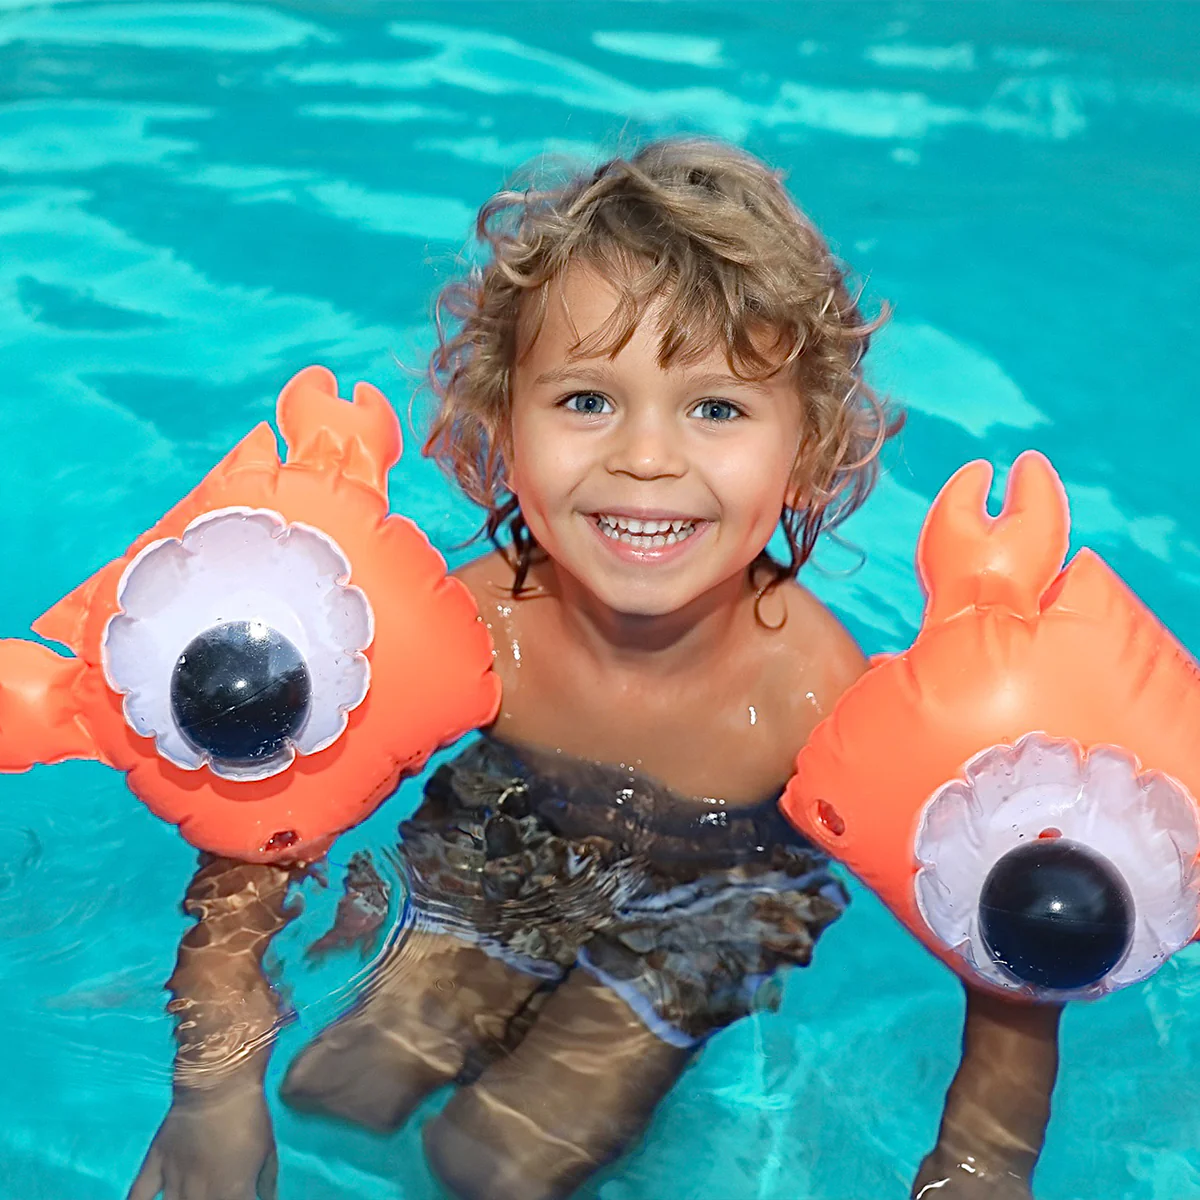 Rękawki do pływania Sunnylife - Sonny the Sea Creature Neon Orange